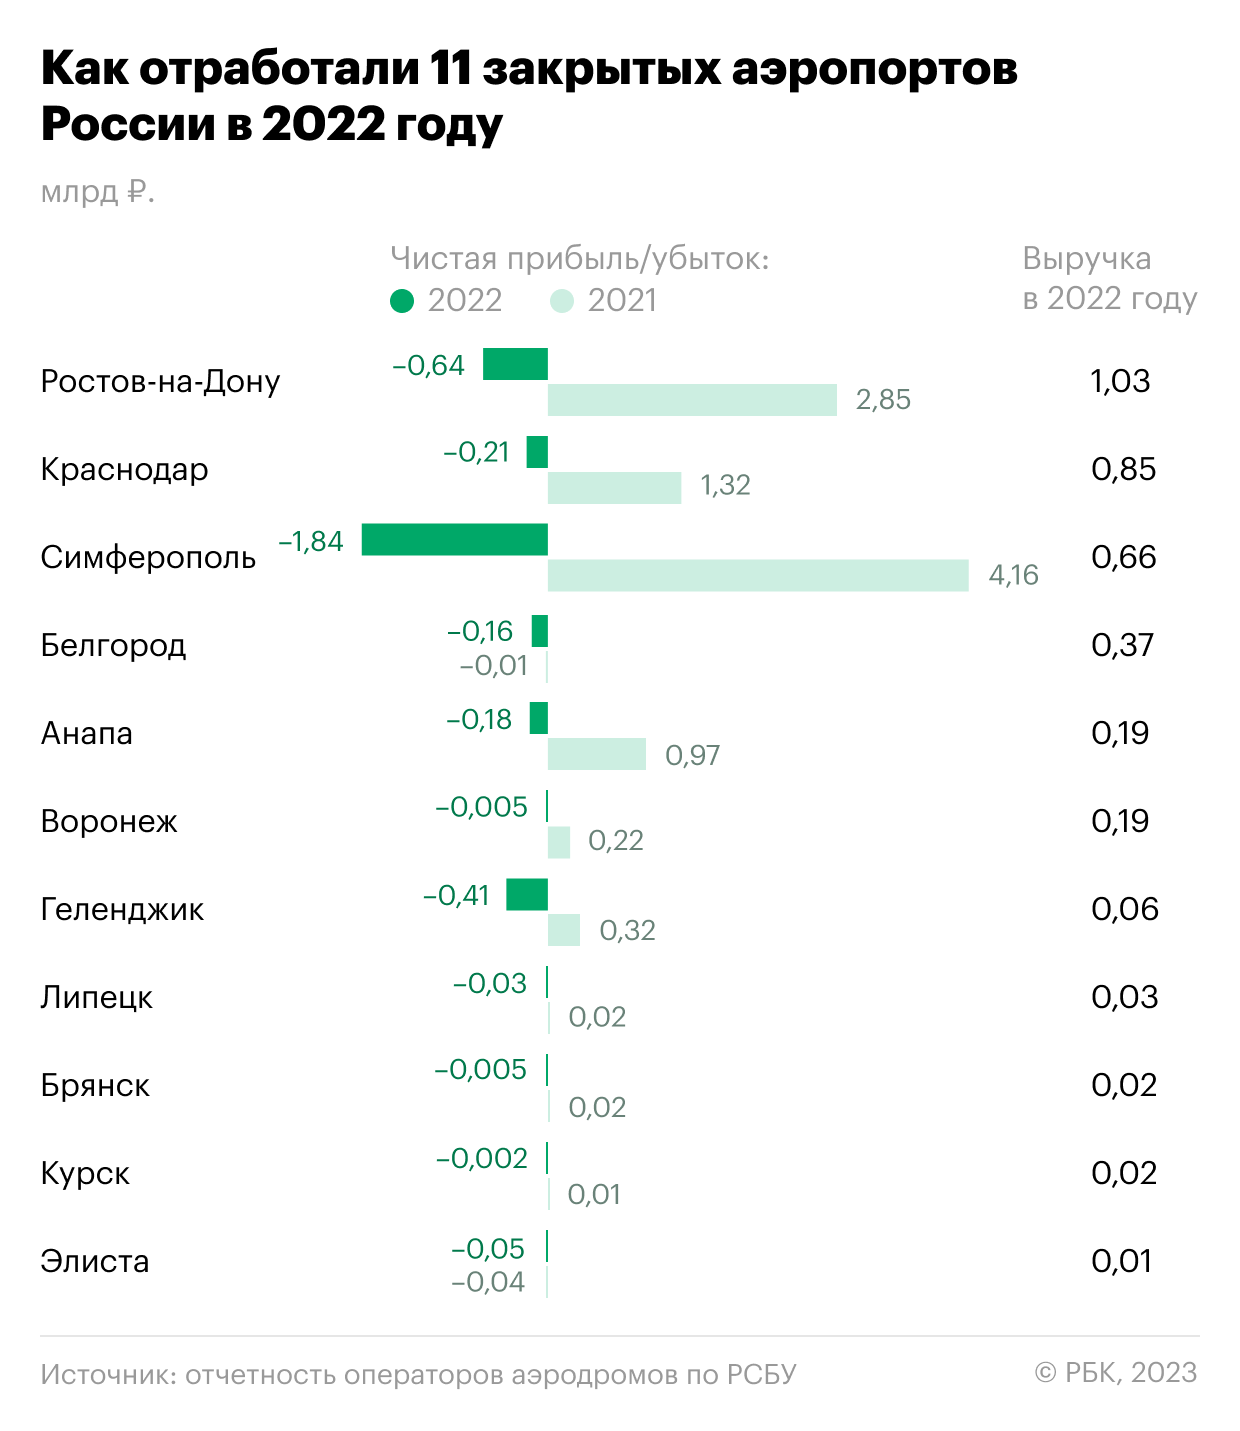 Сочи, Петербург, Екатеринбург: где аэропорты получили прибыль в 2022 году